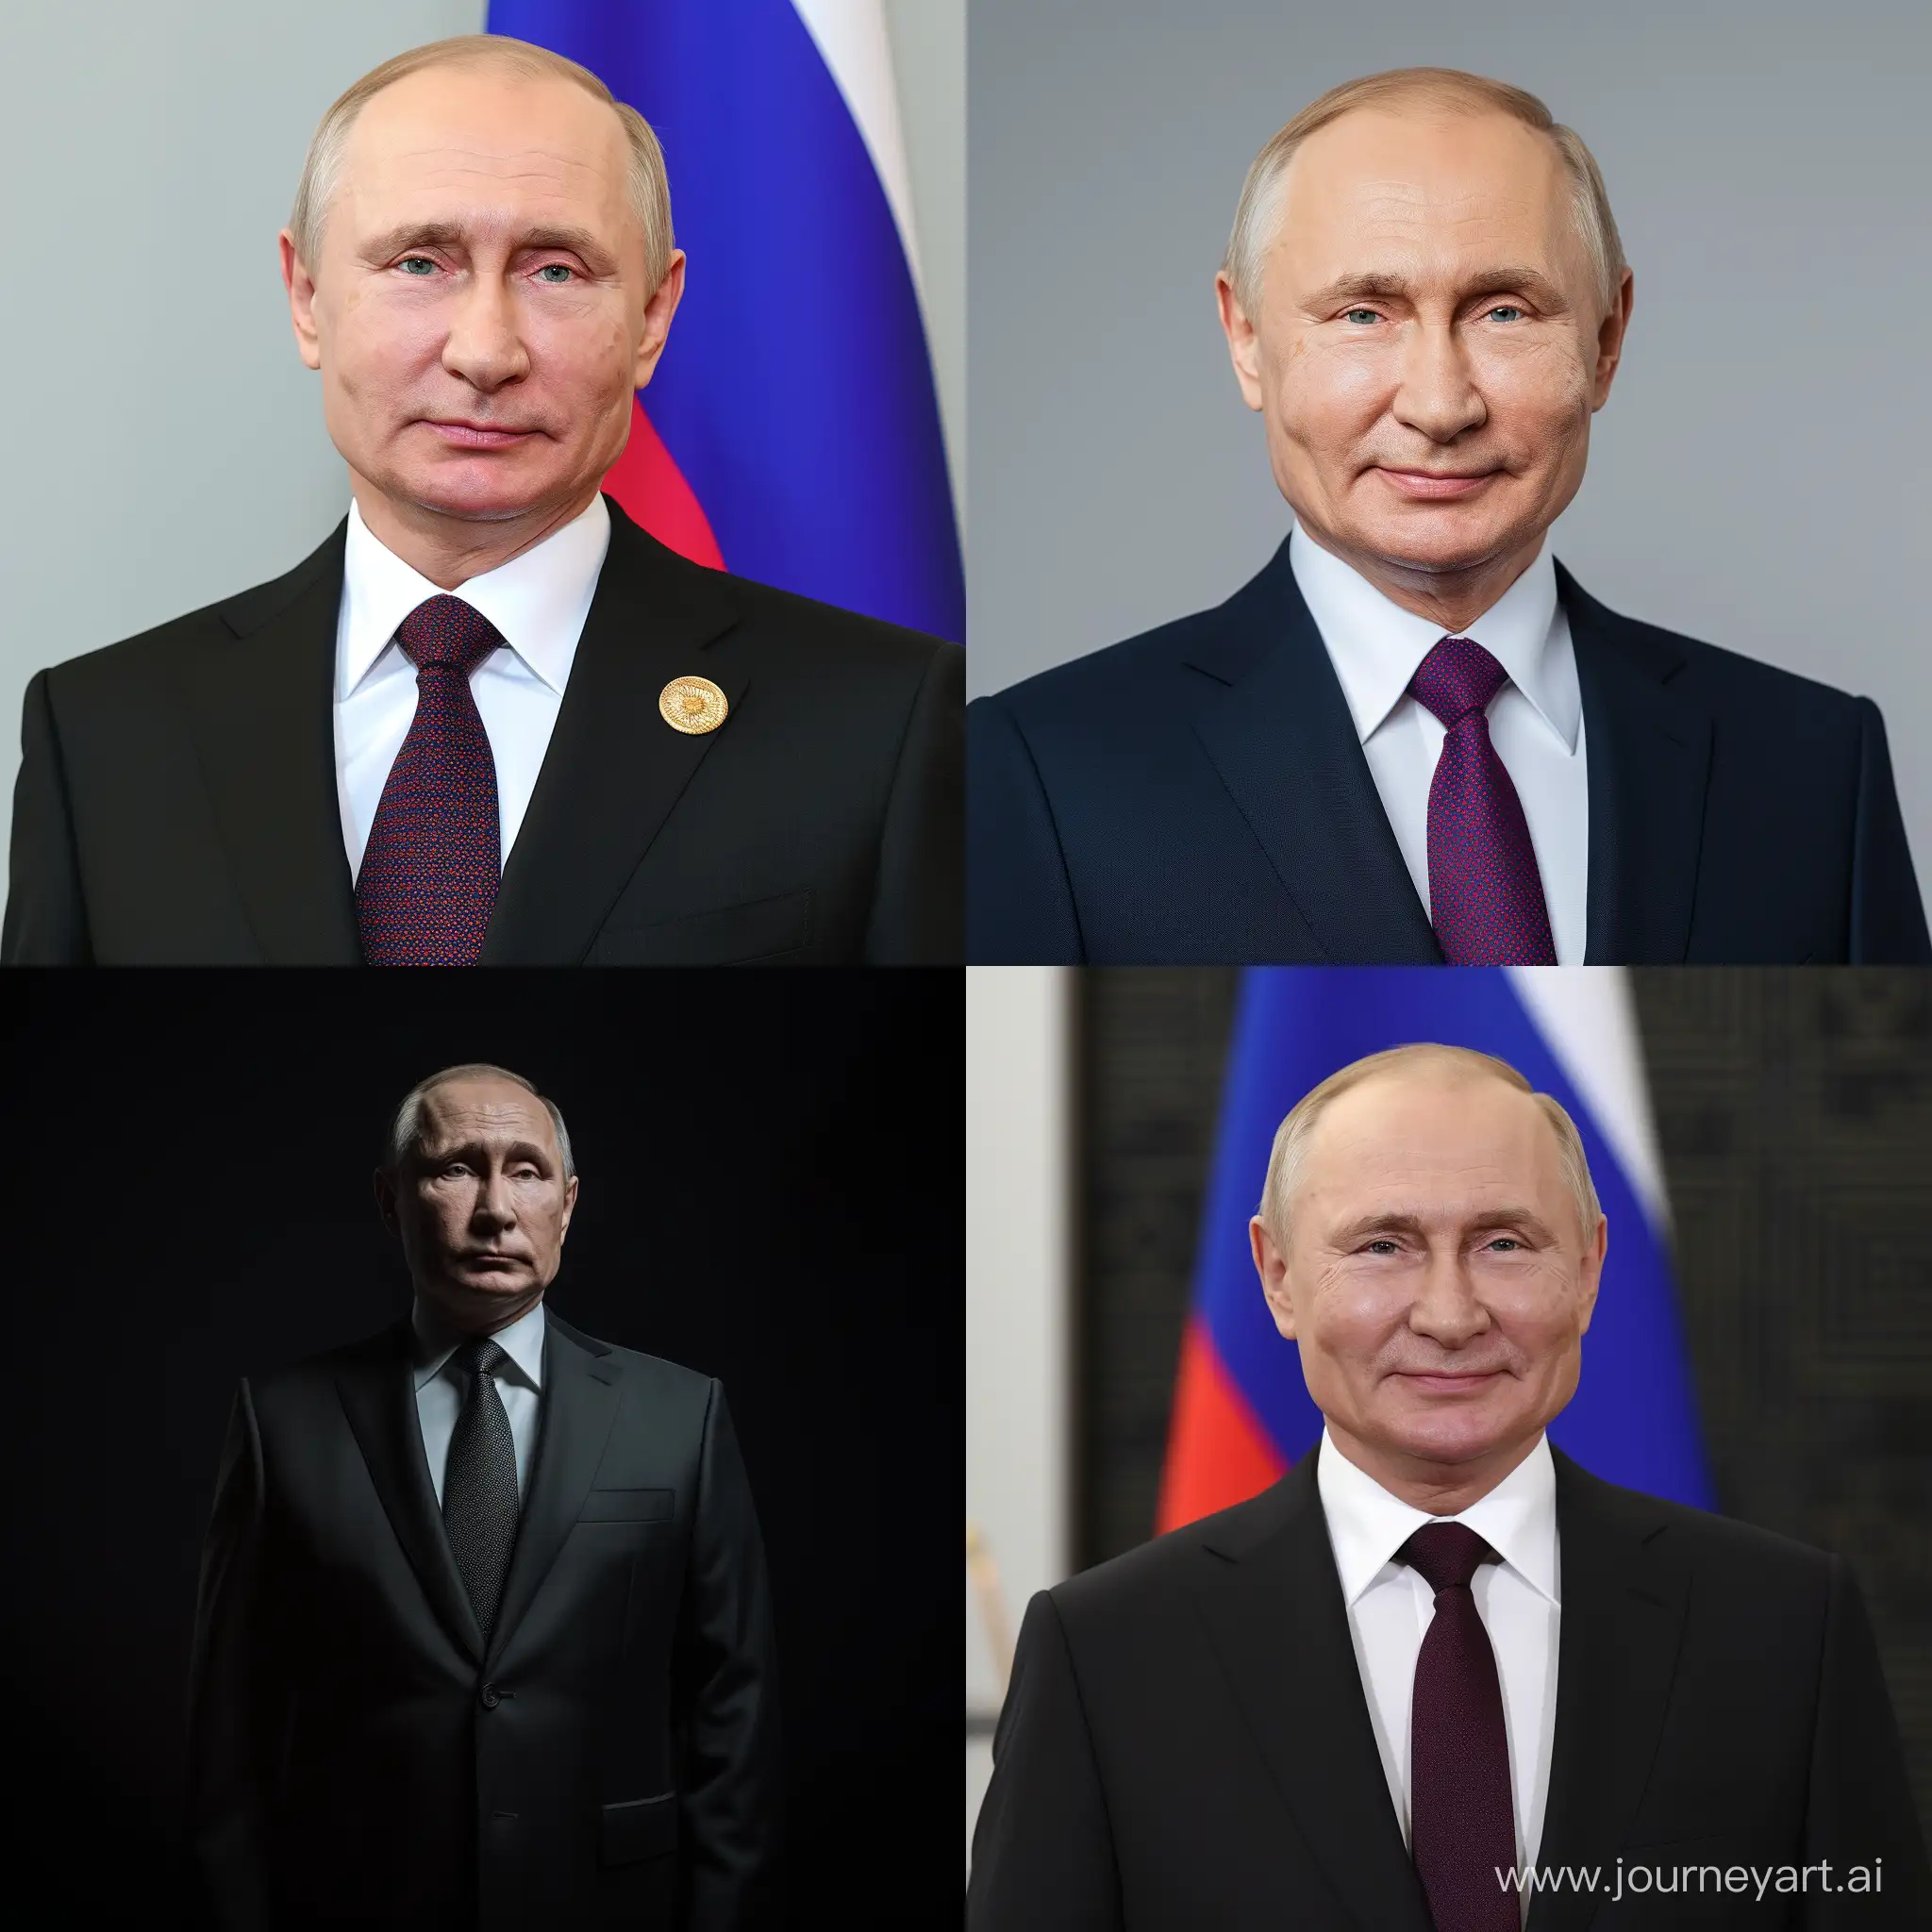 Vladimir-Putin-Portrait-in-Classic-Style